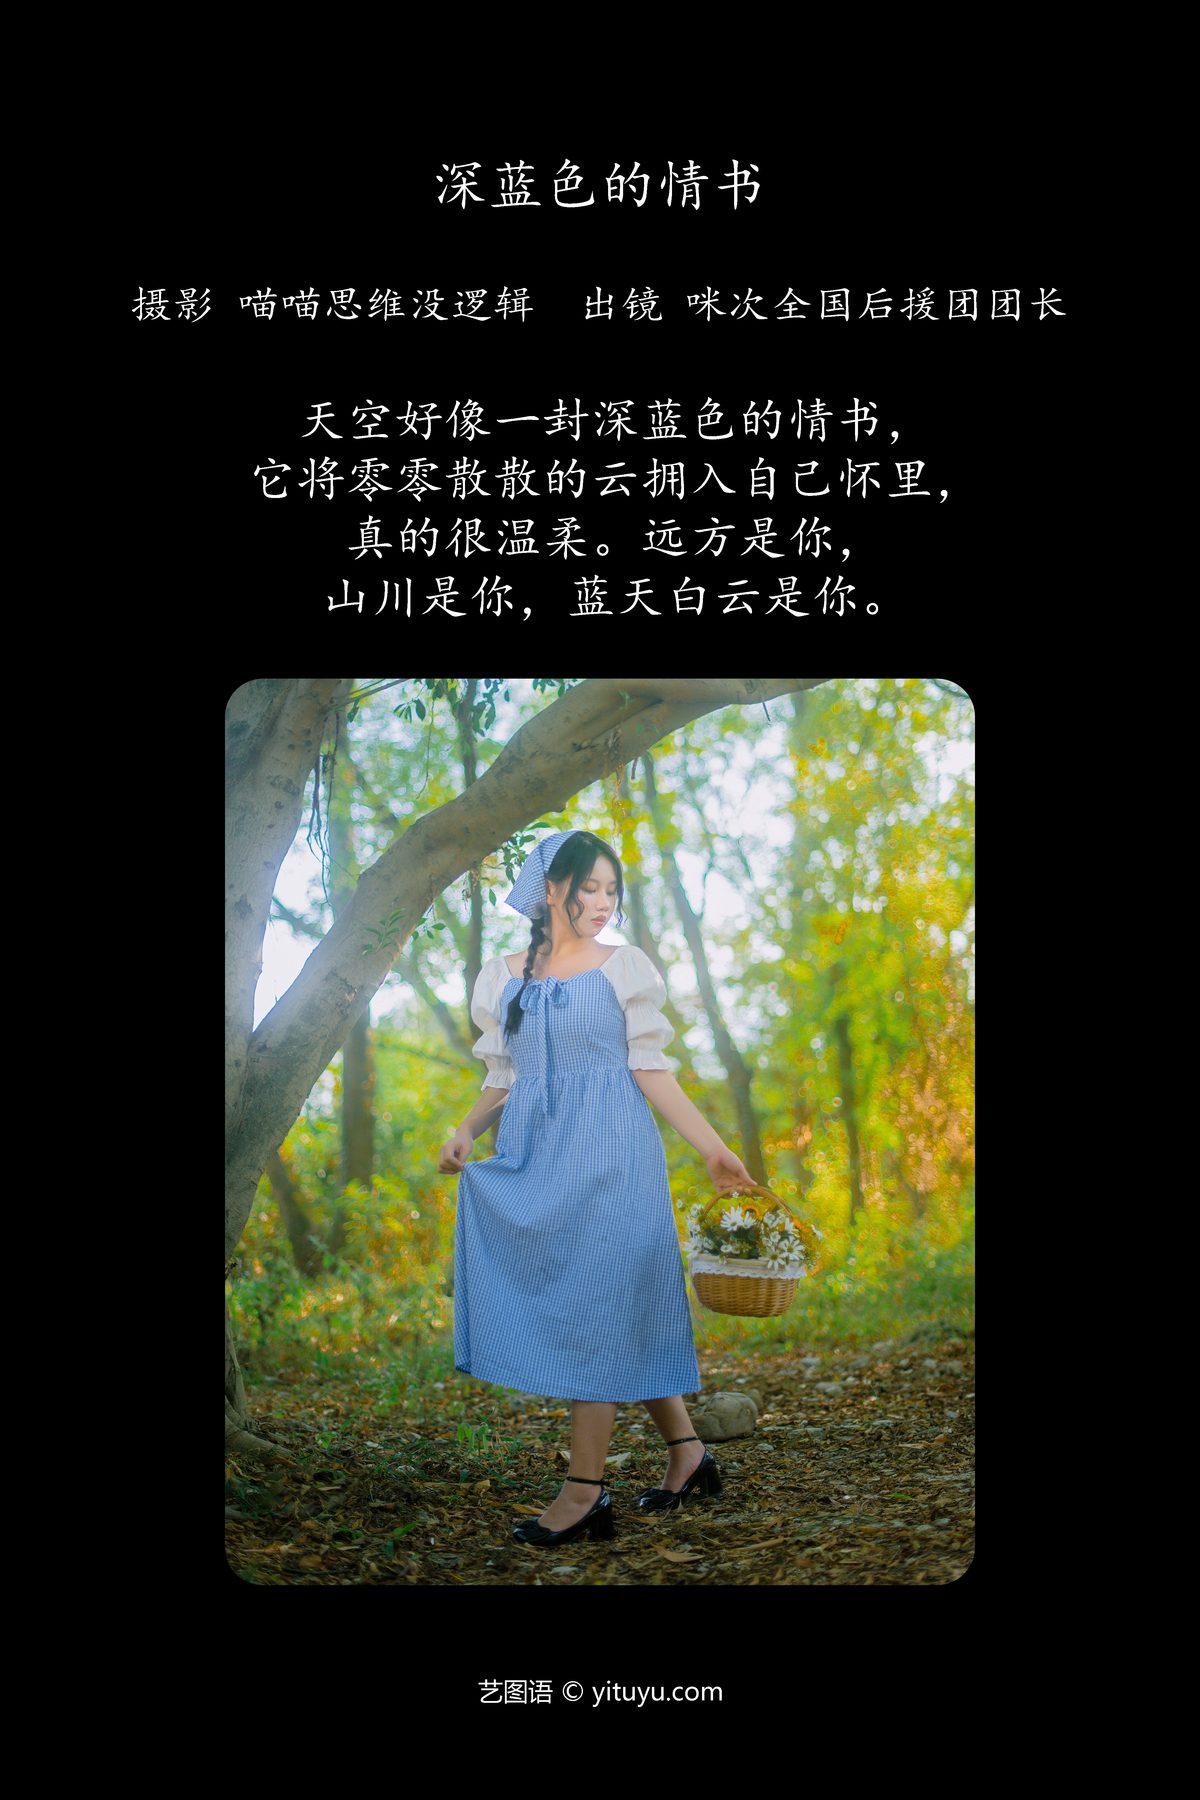 YiTuYu艺图语 Vol 5852 Mi Ci Quan Guo Hou Yuan Tuan Tuan Zhang 0001 0995161039.jpg